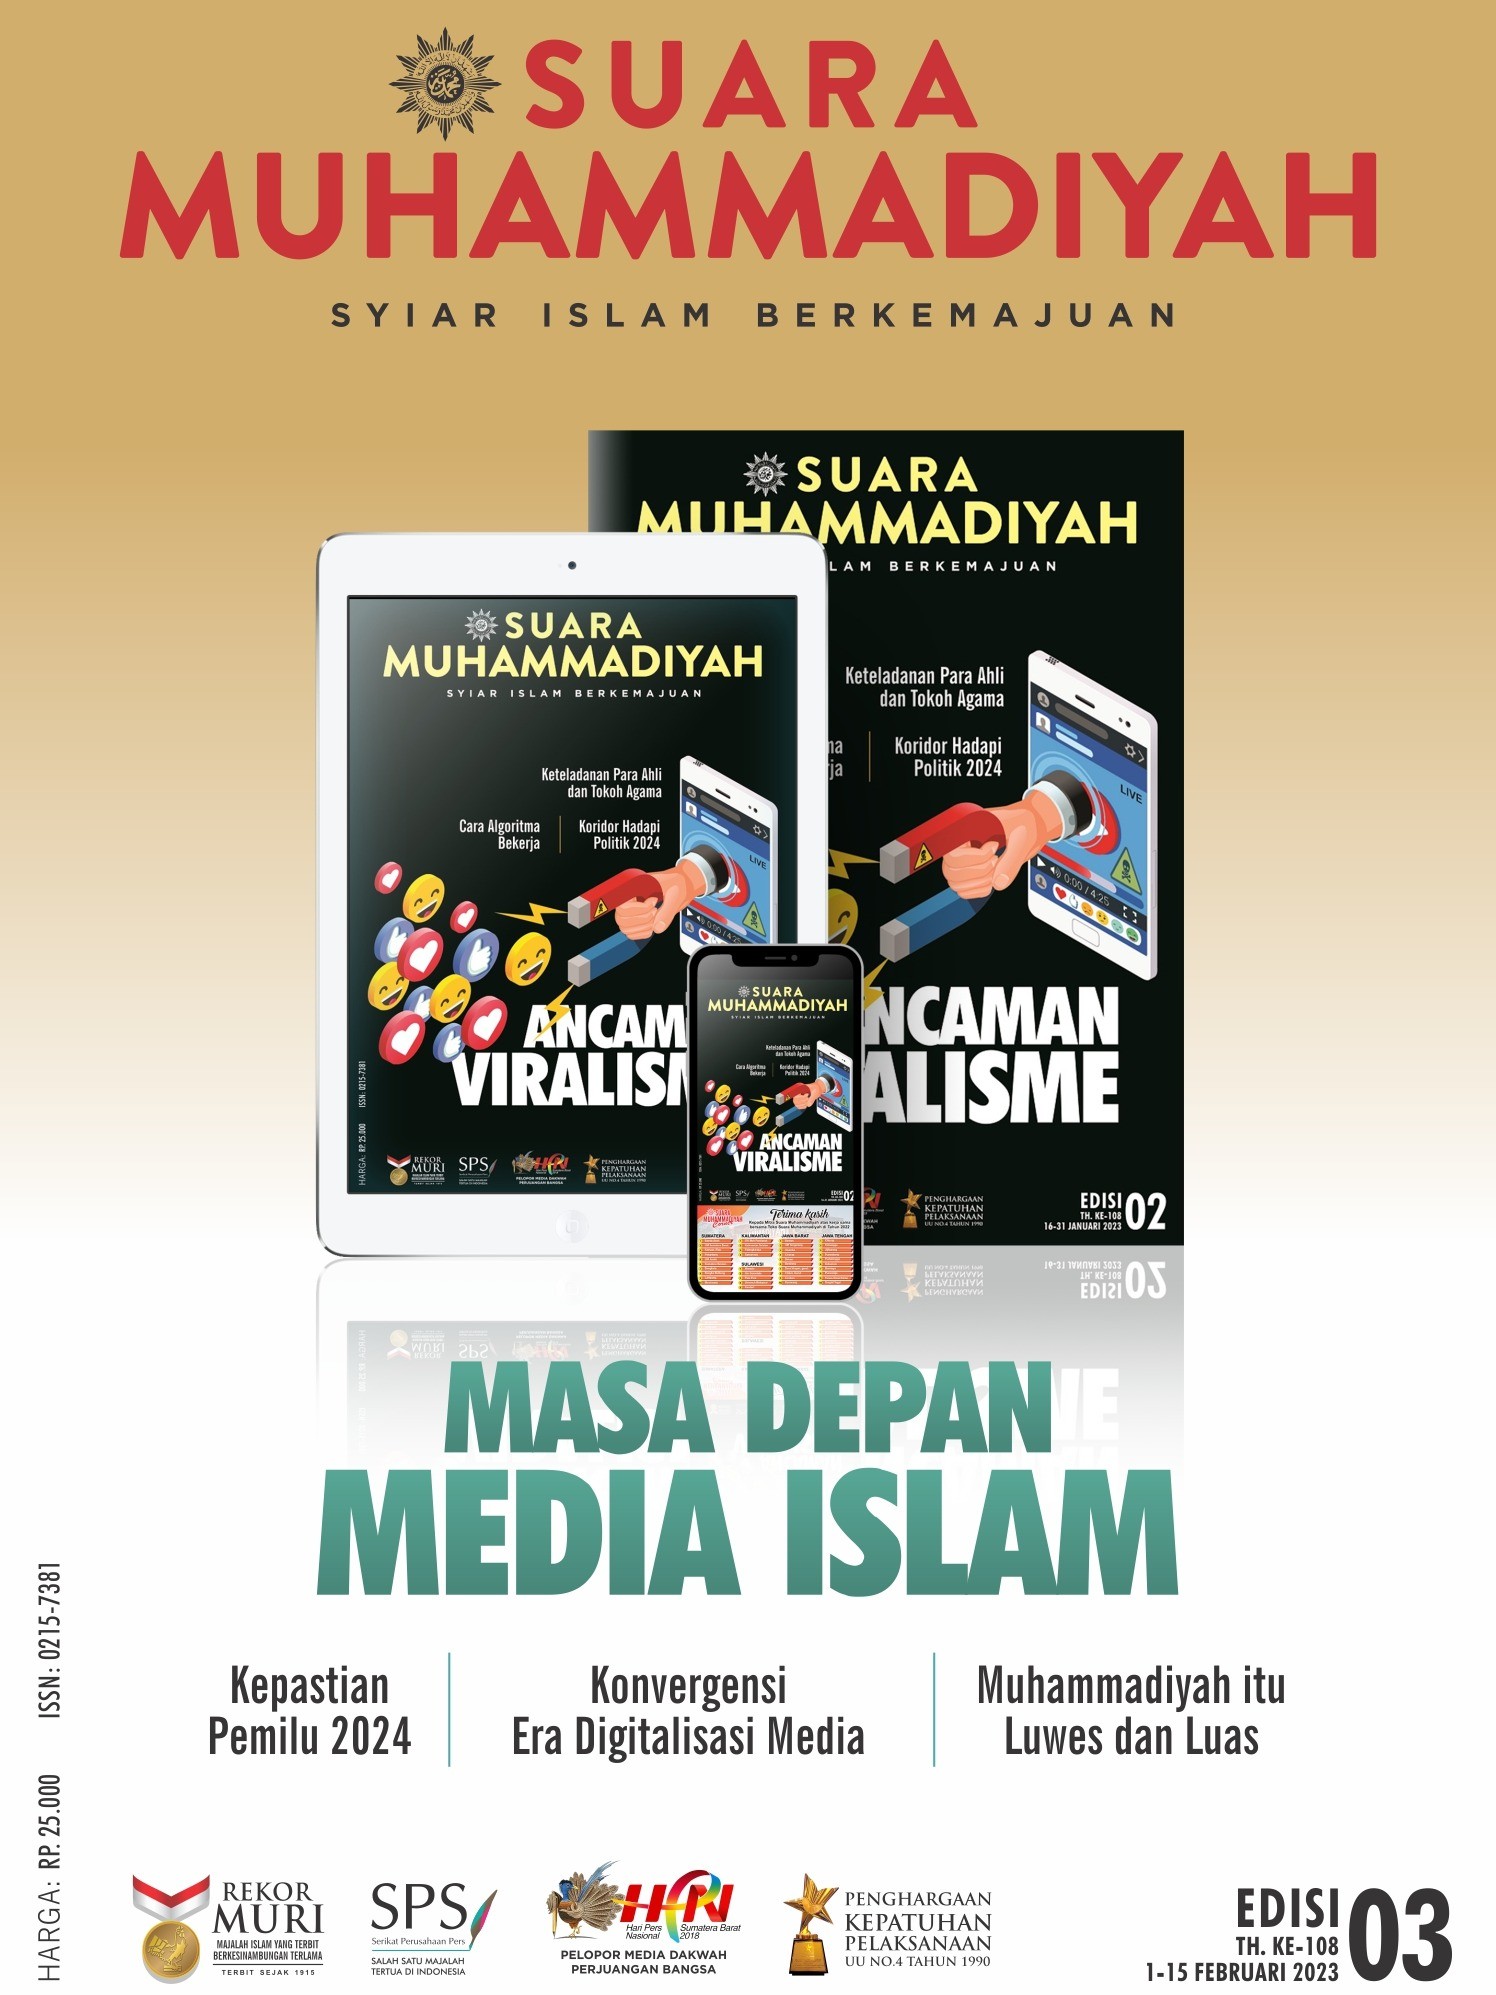 MASA DEPAN MEDIA ISLAM